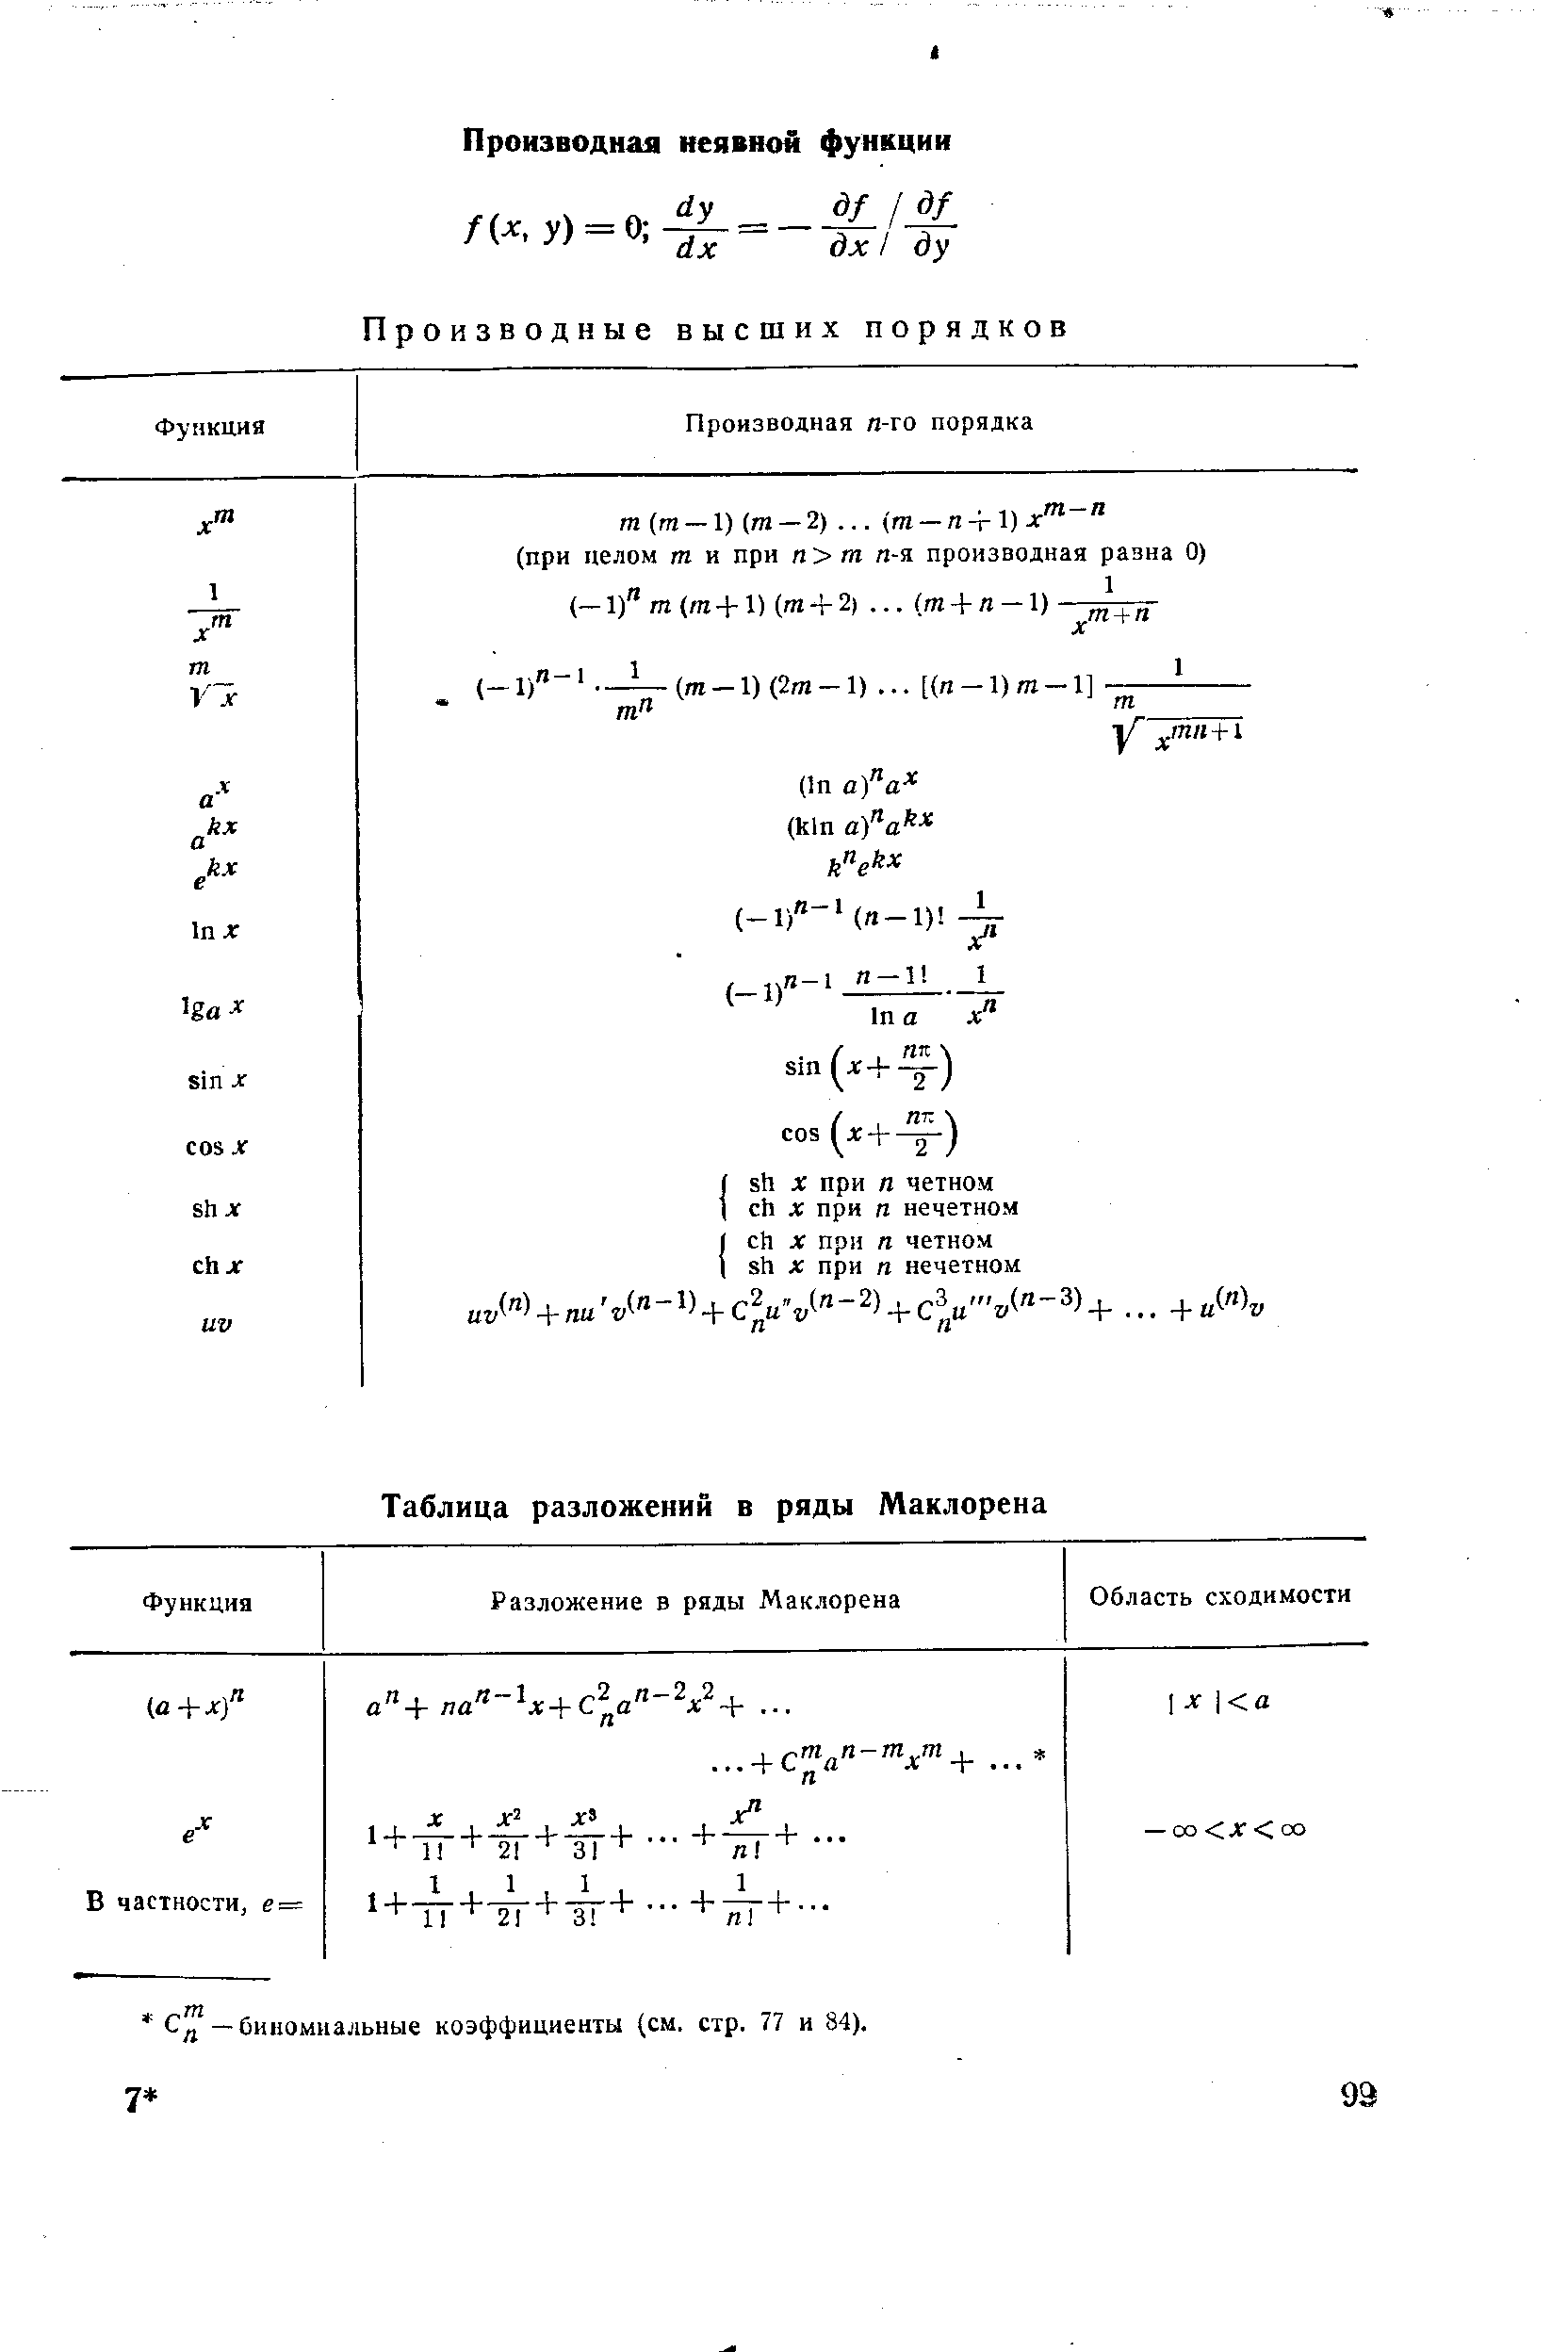 Сд —биномиальные коэффициенты (см. стр. 77 и 84).